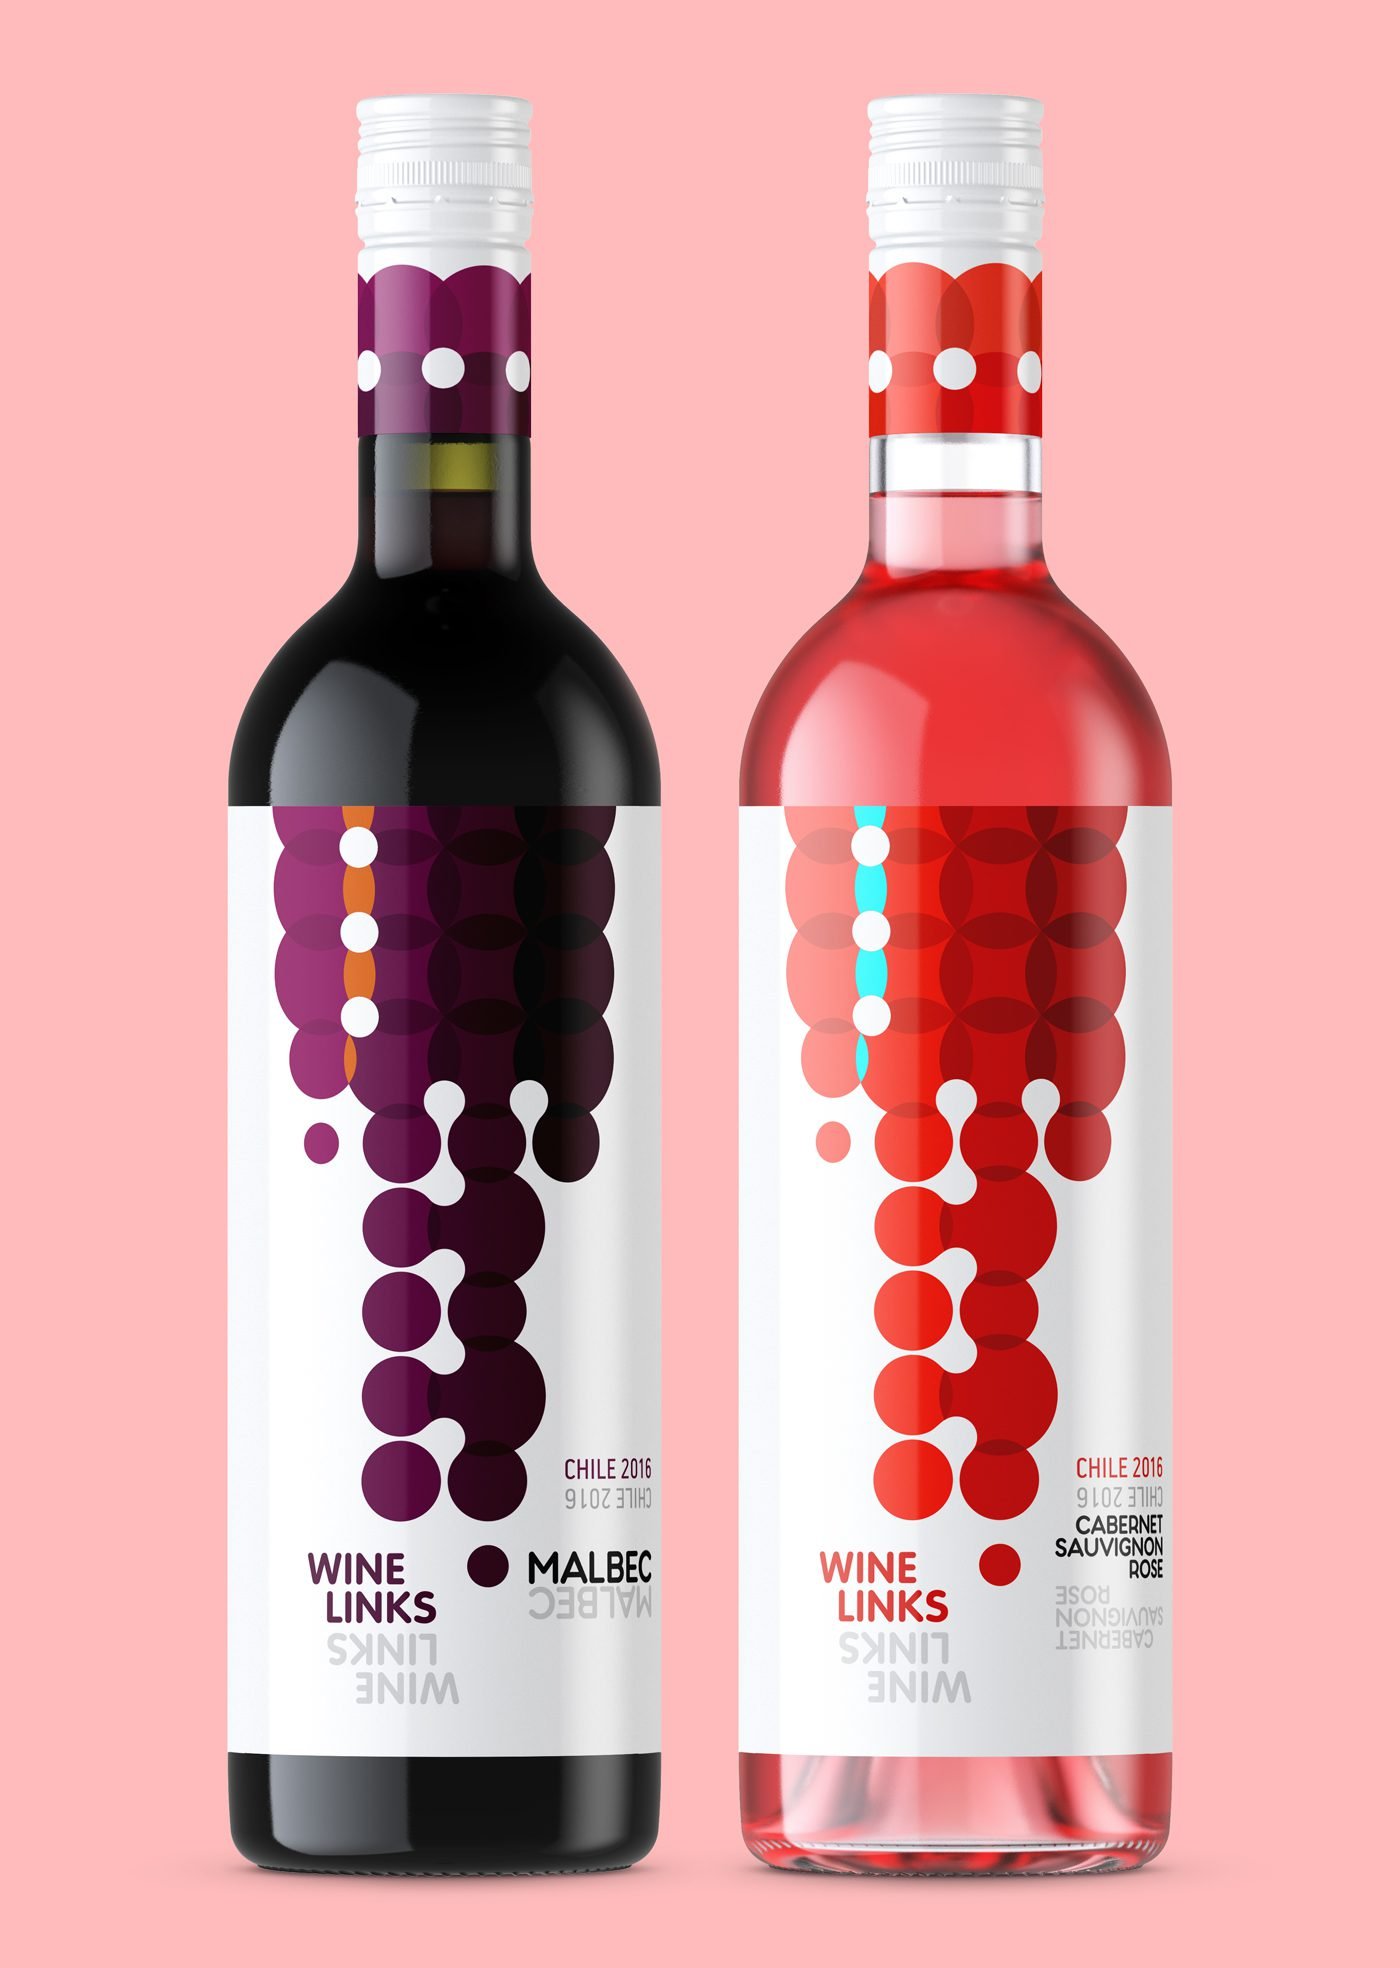 Estudo de design de embalagem para vinhos da marca Wine Links | Assinado pela Brandium